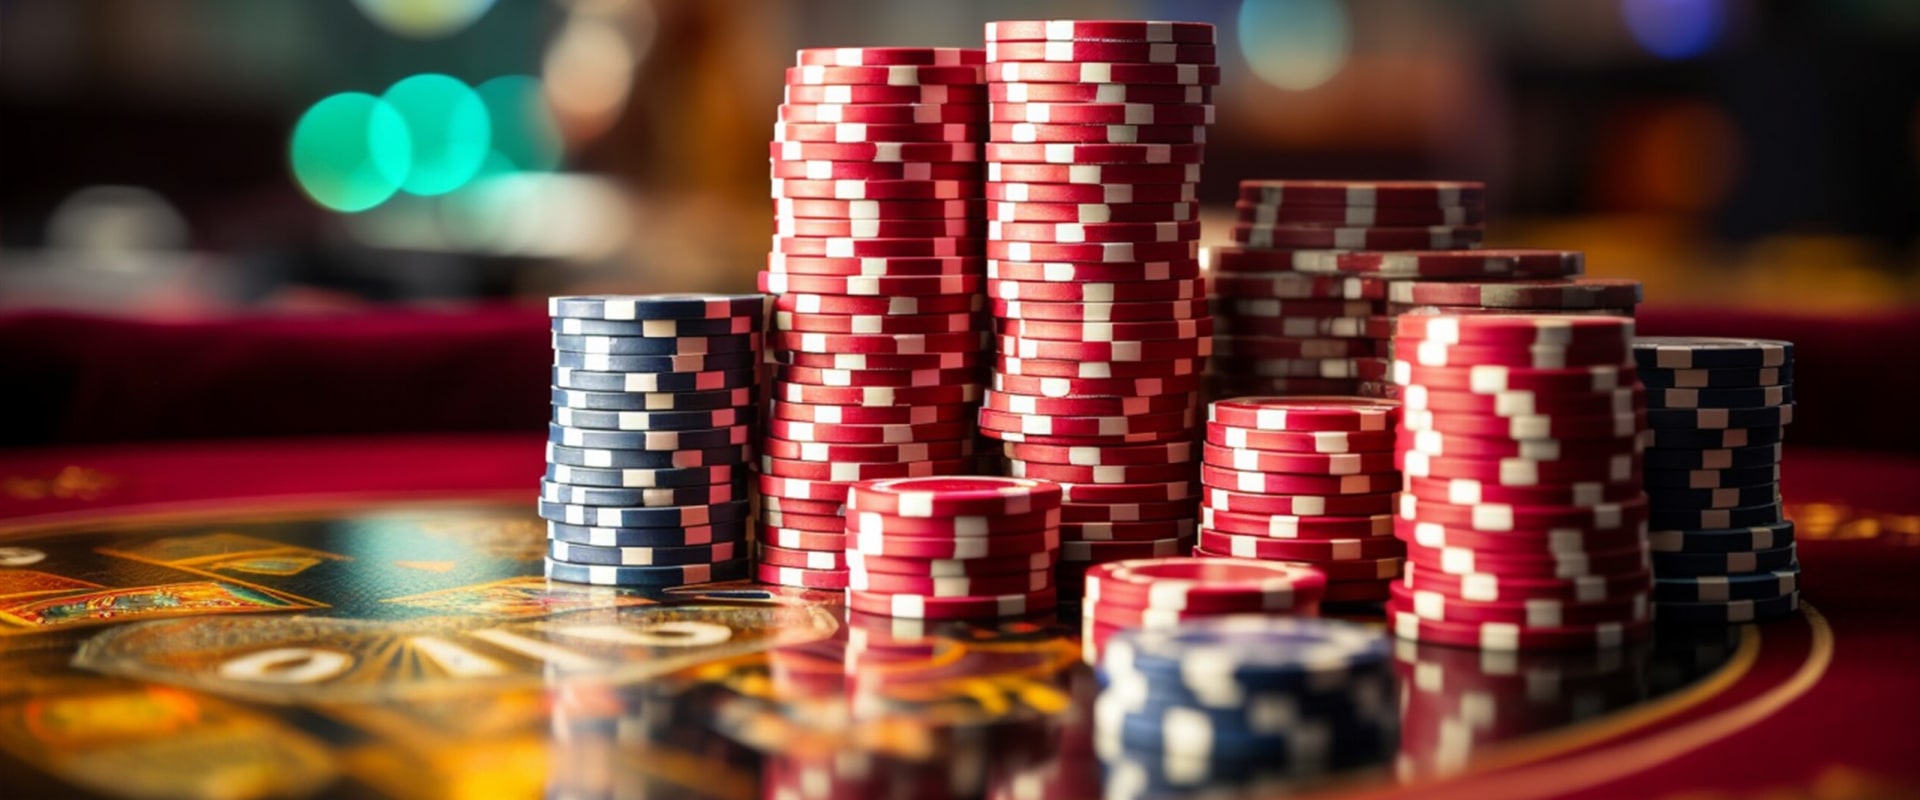 Undersöka rykte och historia för icke-svenska kasinon